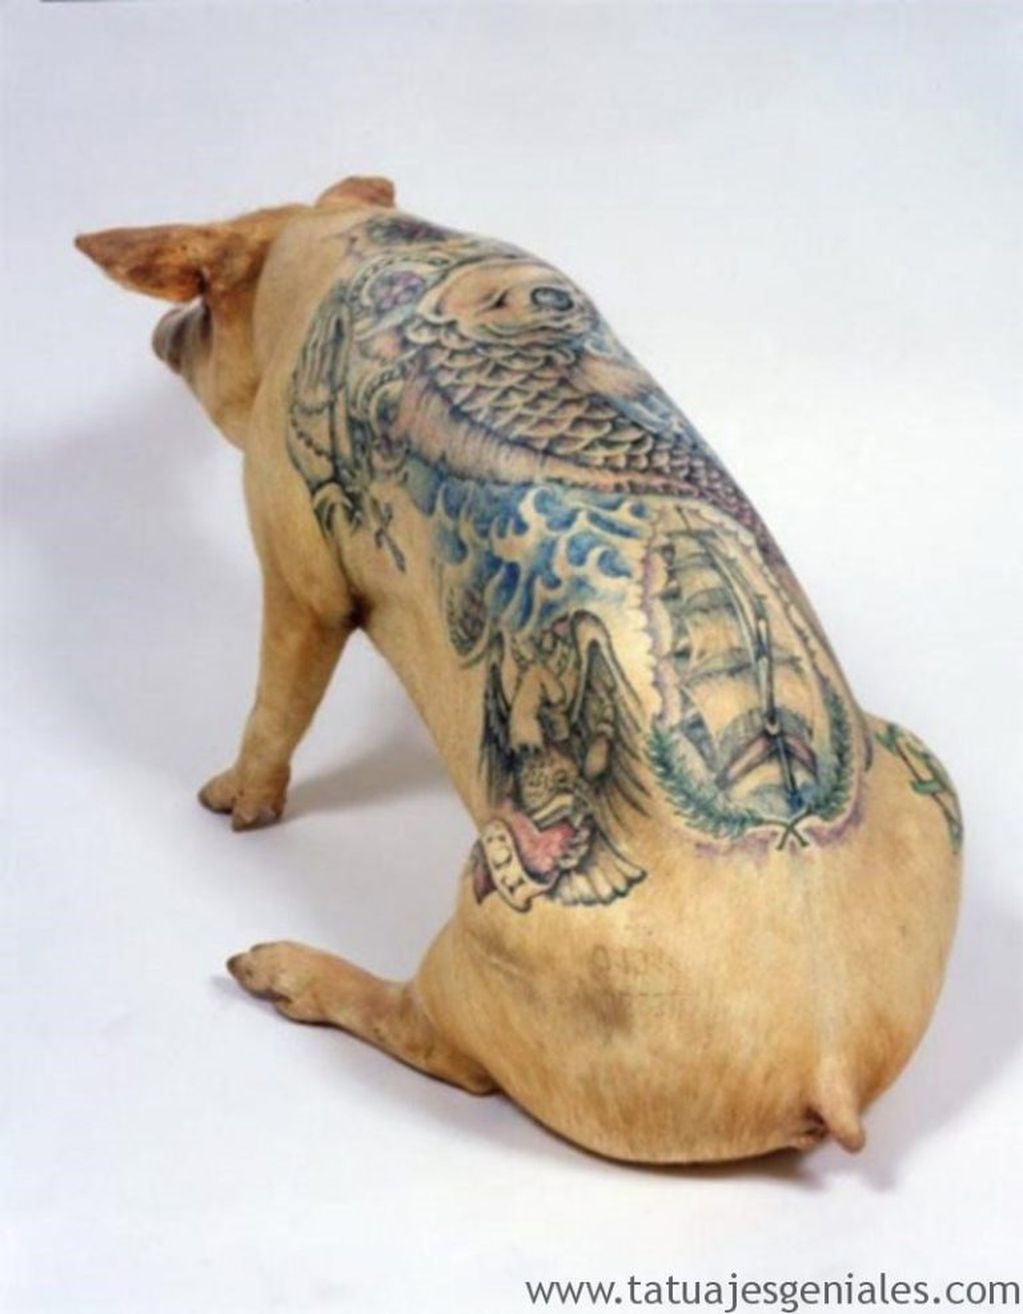 Polémica por una nueva tendencia que propone tatuar a los gatos